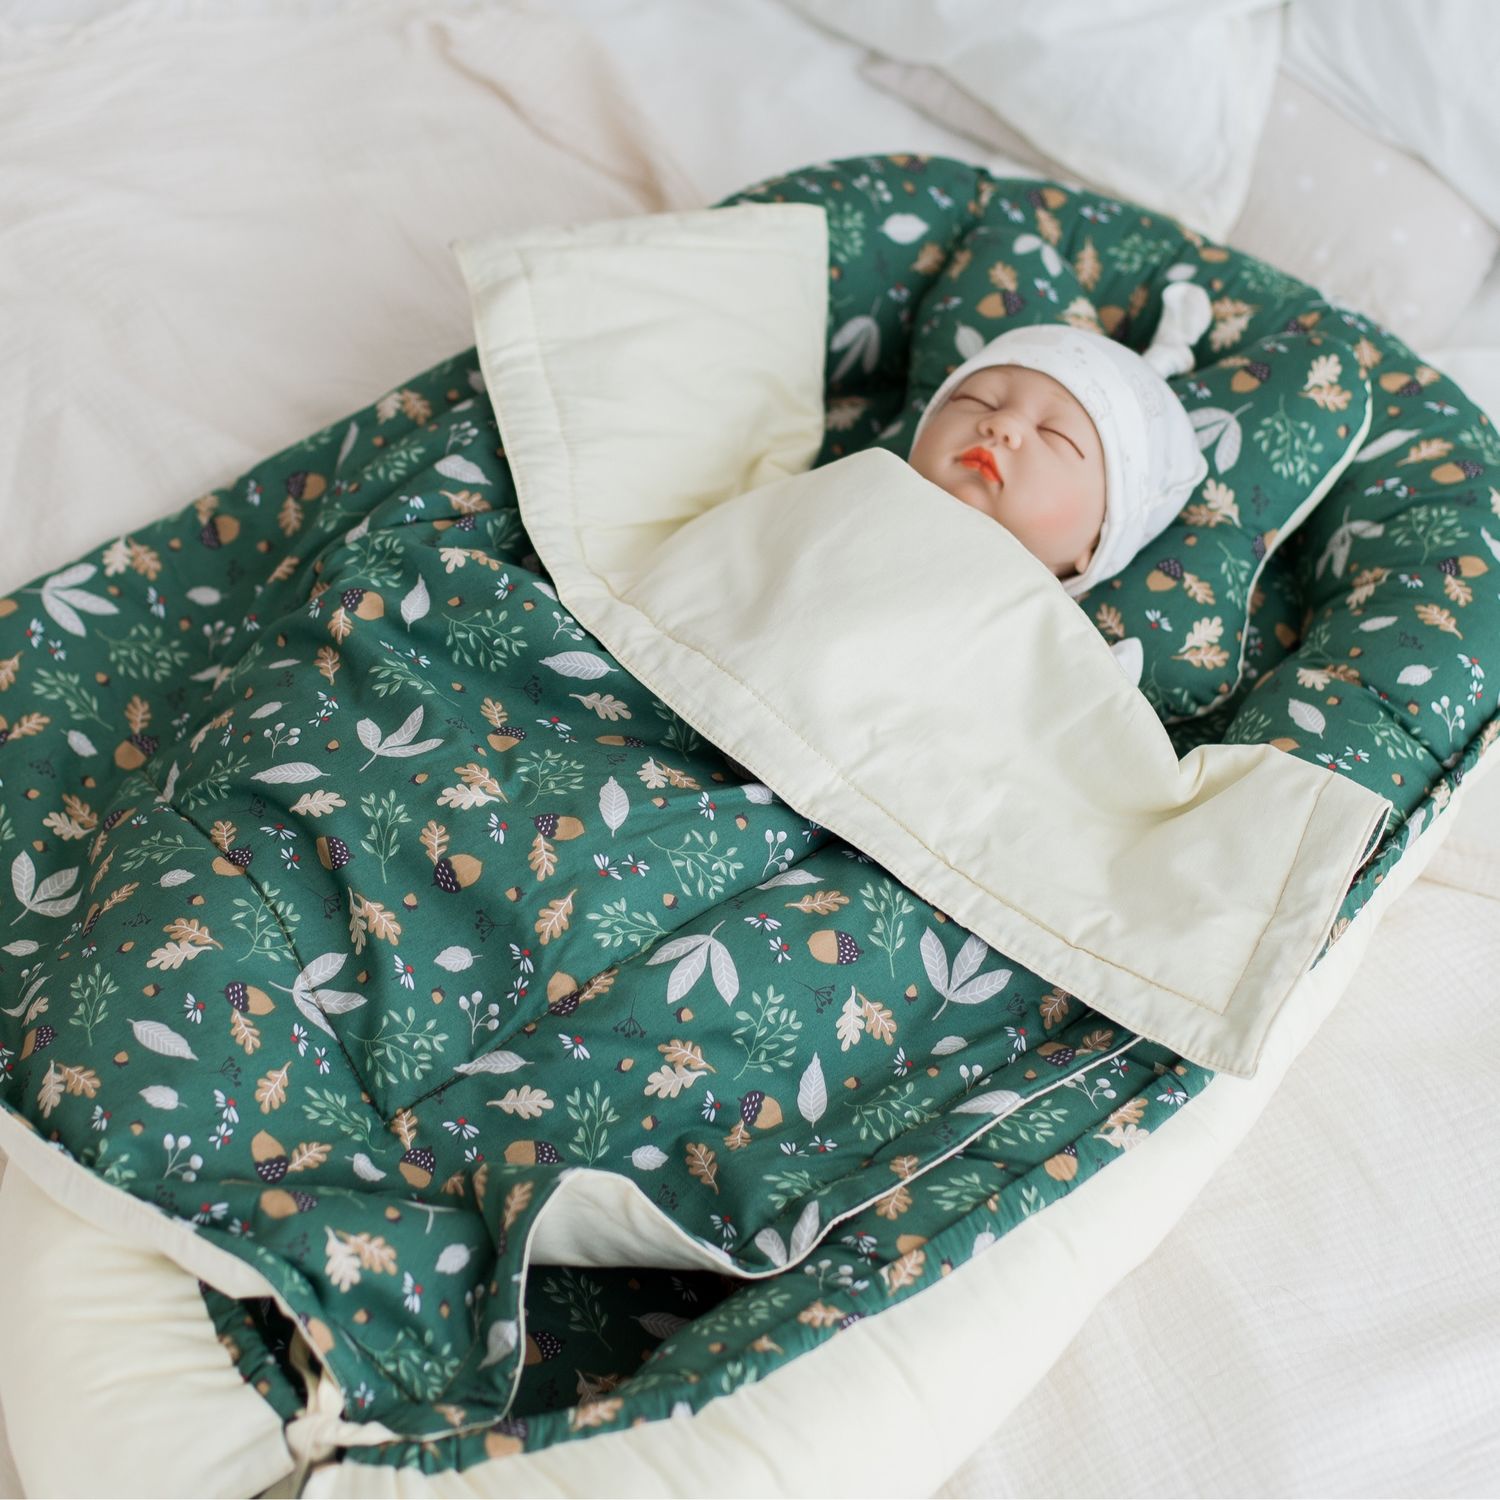 Кокон-гнёздышко для новорождённого (комплект из 5-ти изделий), Кокон-гнездо, Барнаул,  Фото №1